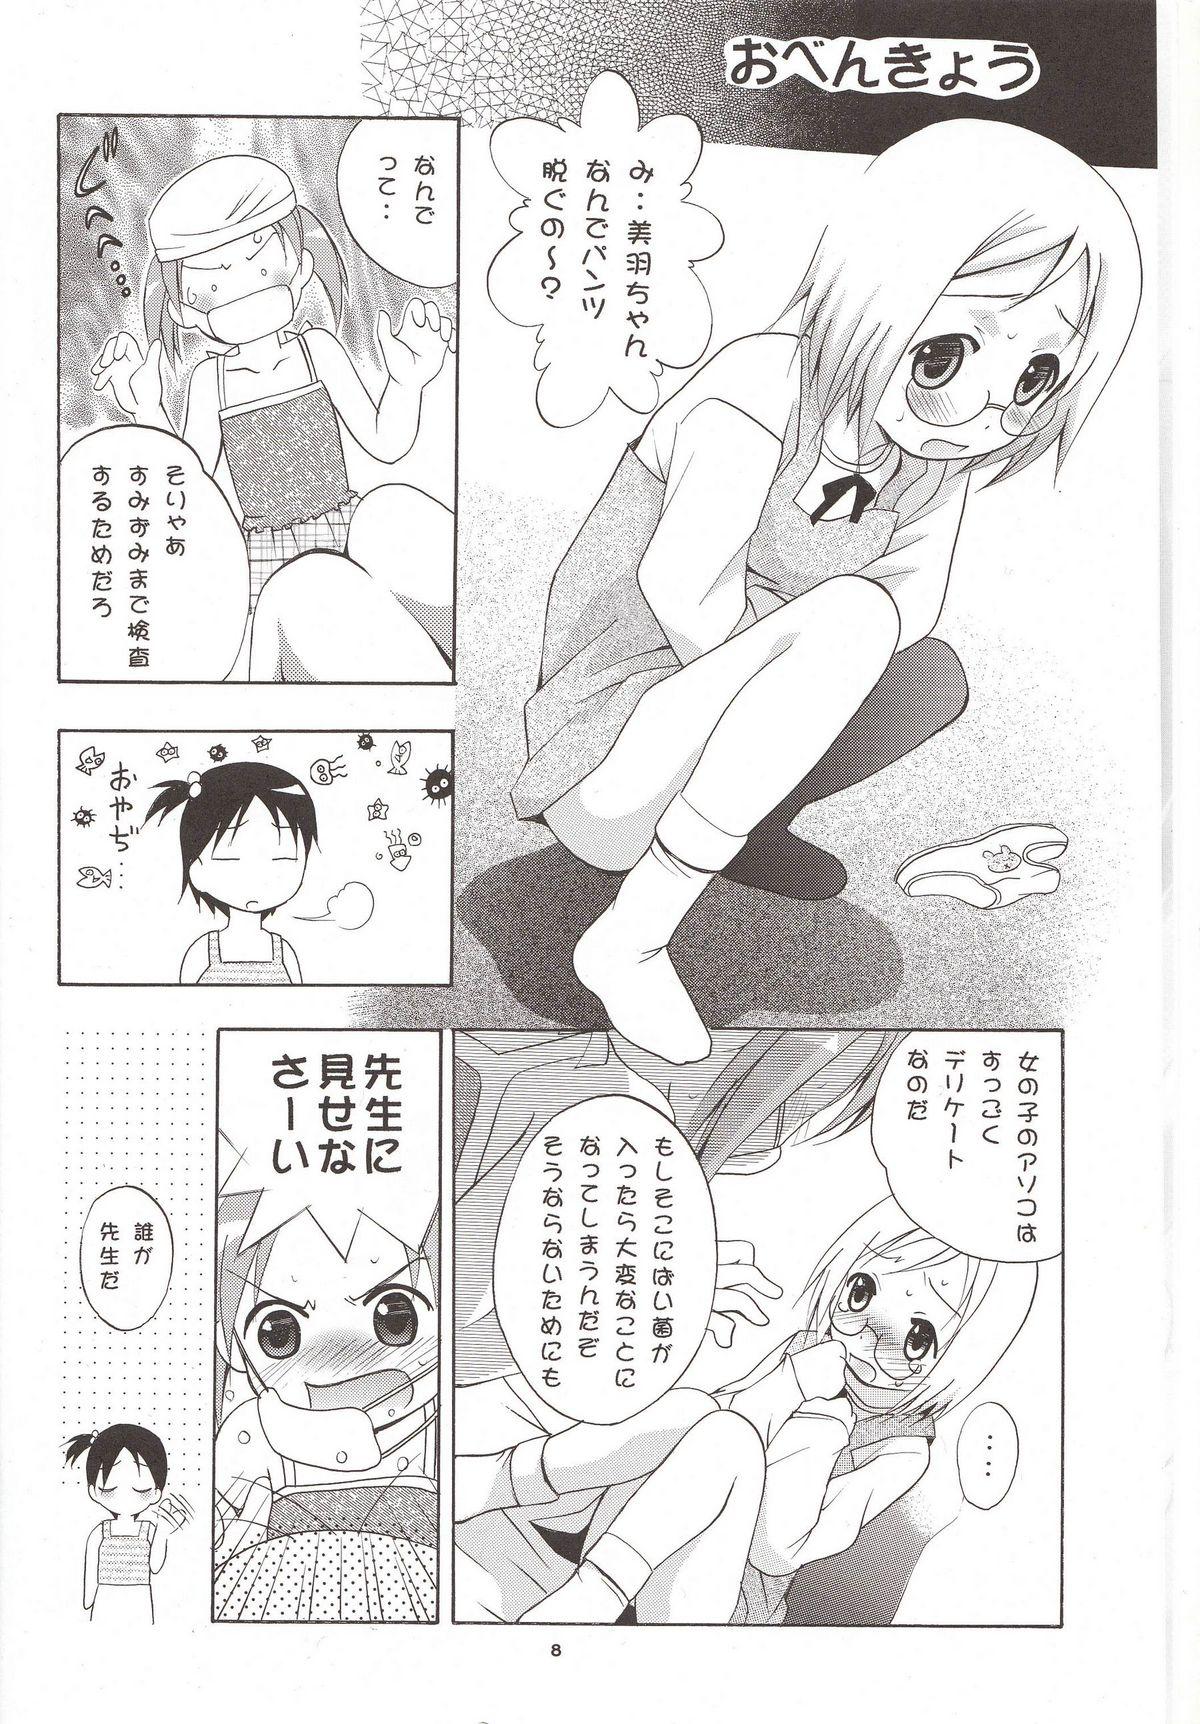 Food Mousou Mini Theater 16 - Ichigo mashimaro Fit - Page 7